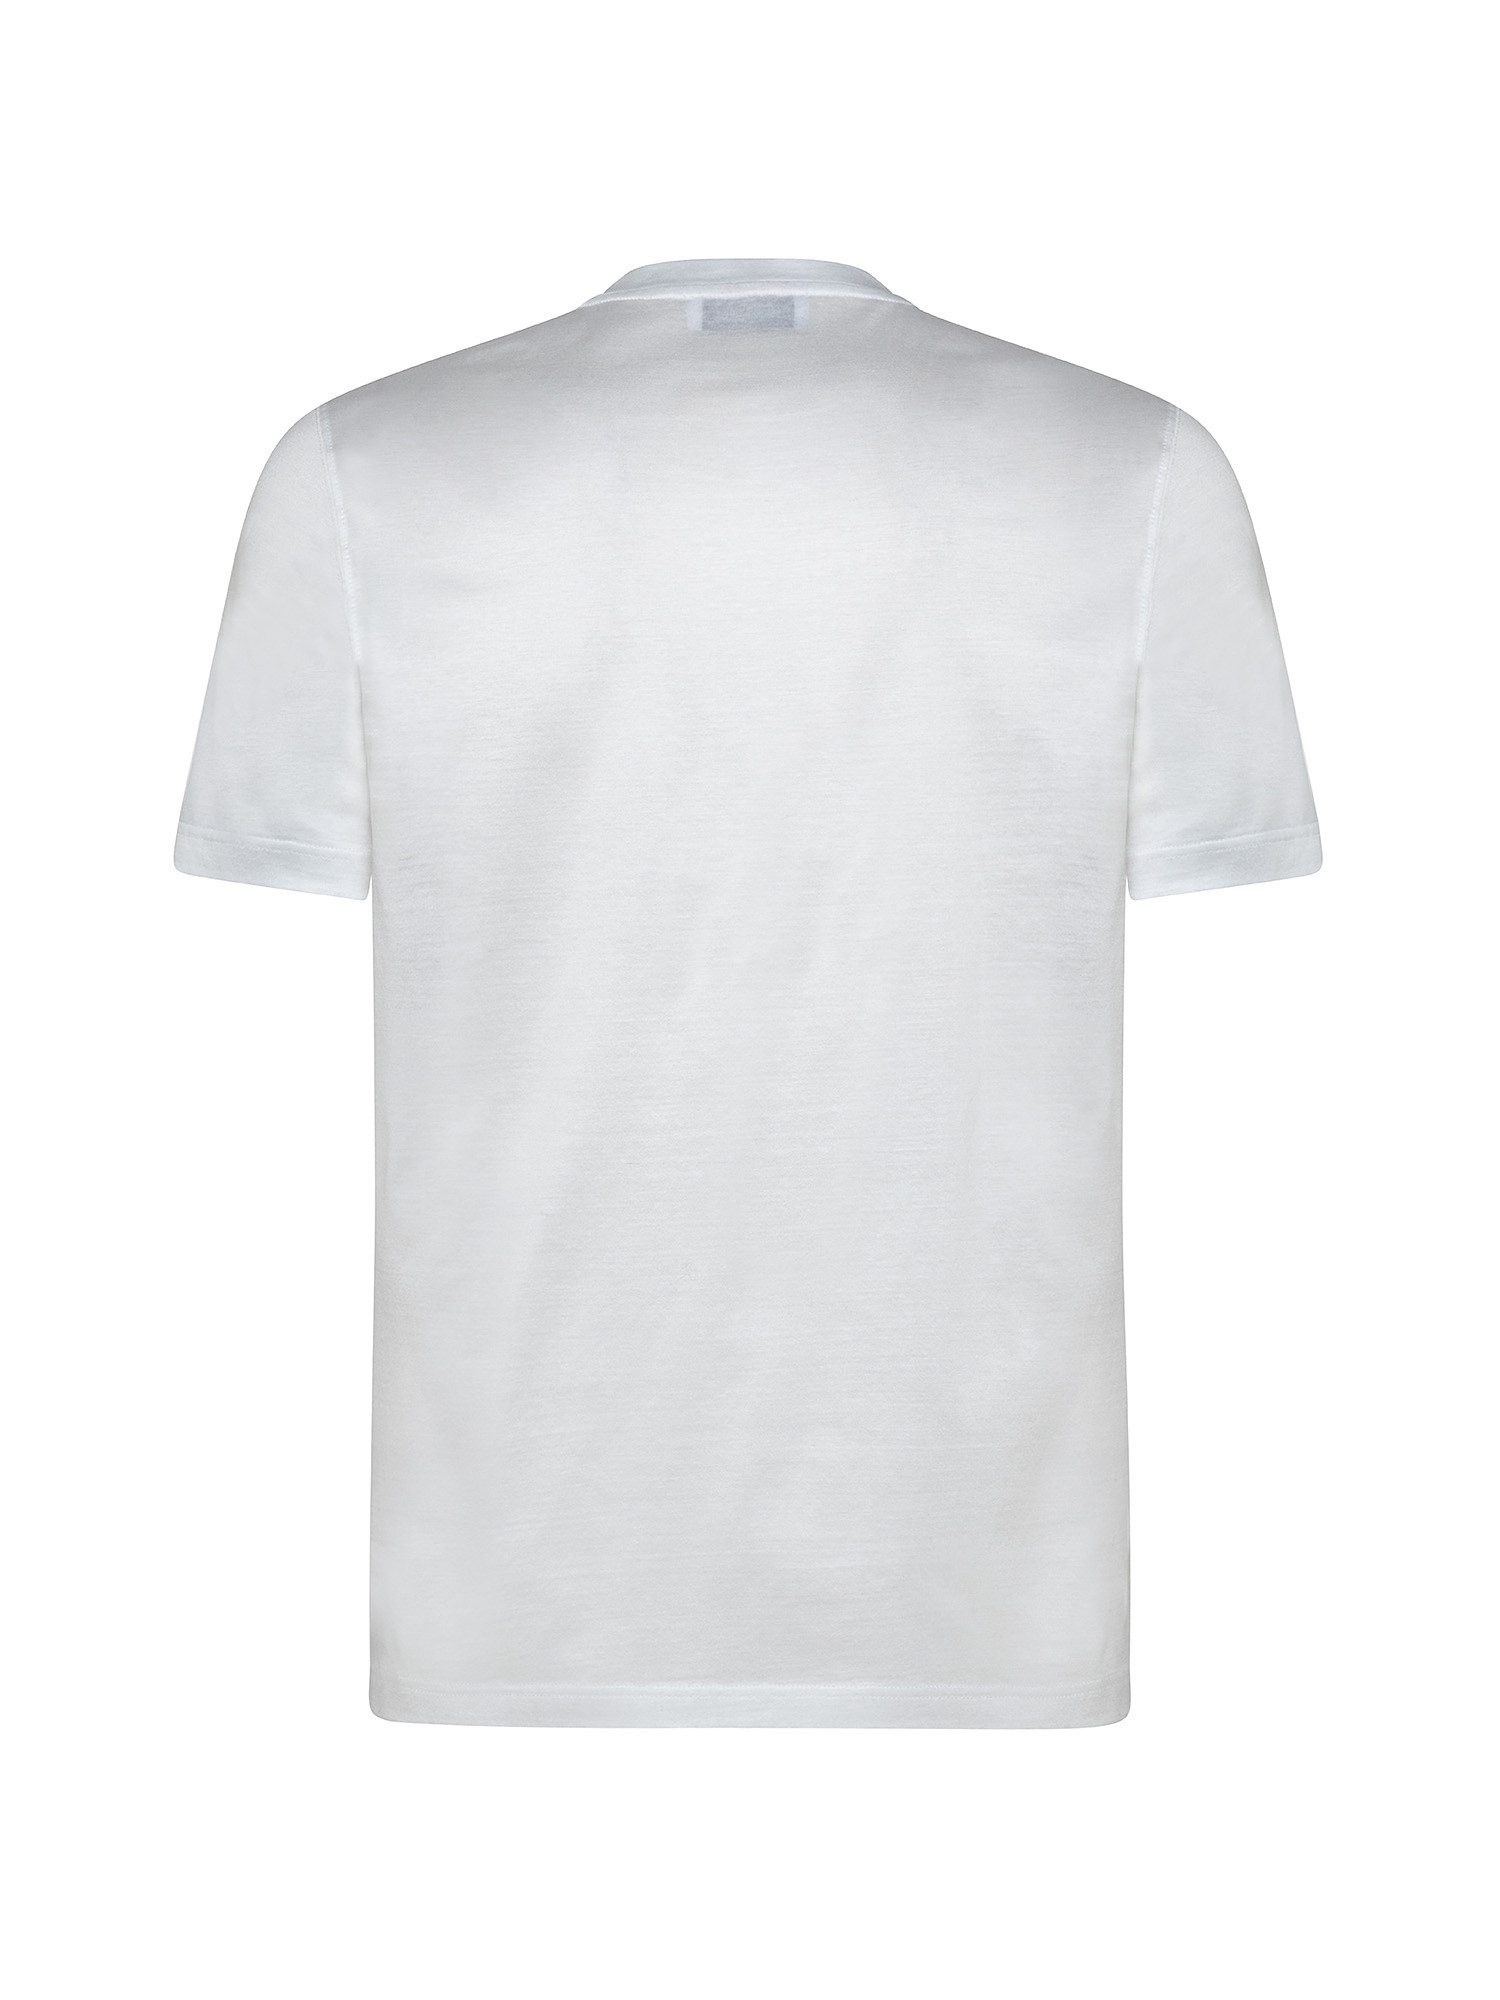 Short sleeve crew neck T-shirt, White, large image number 1